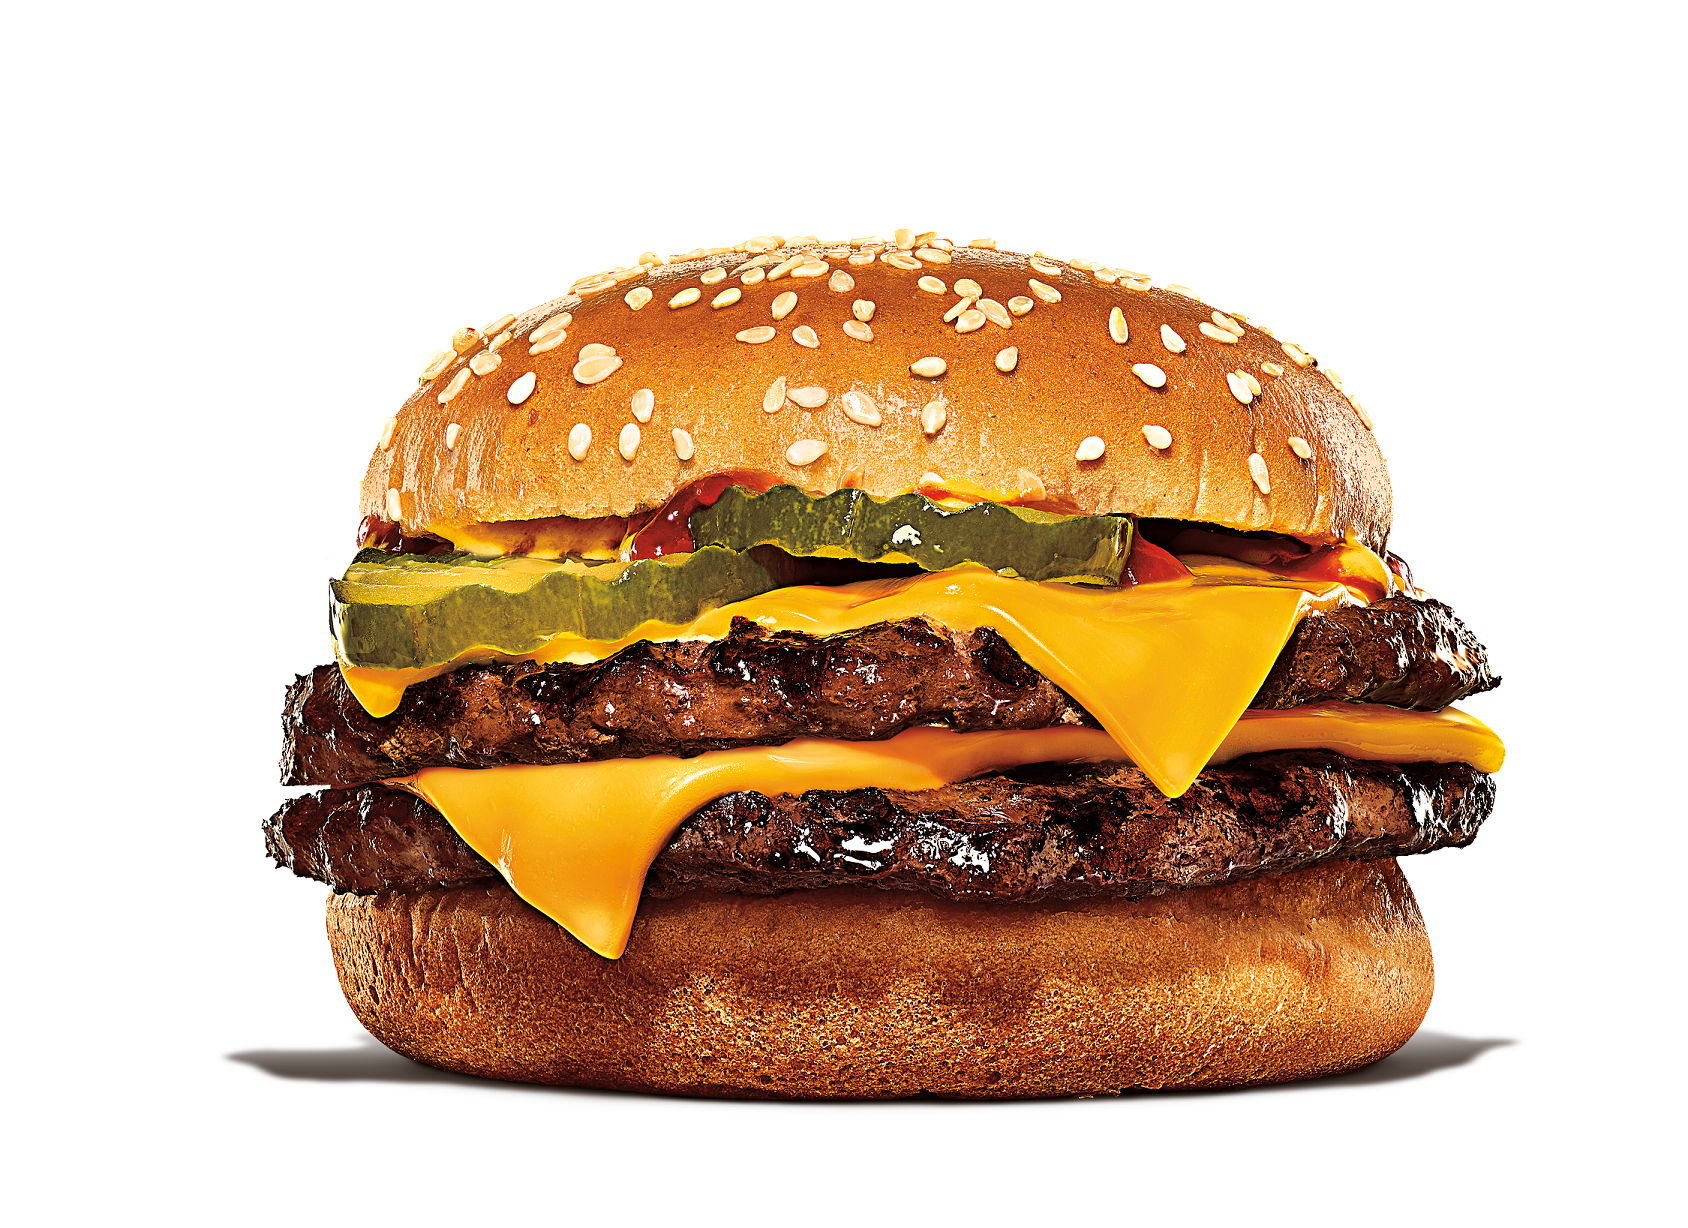 O rodízio de hambúrguer do Burger King acontecerá entre os dias 24 e 26 de março nas lojas de Interlagos e Praça Panamericana